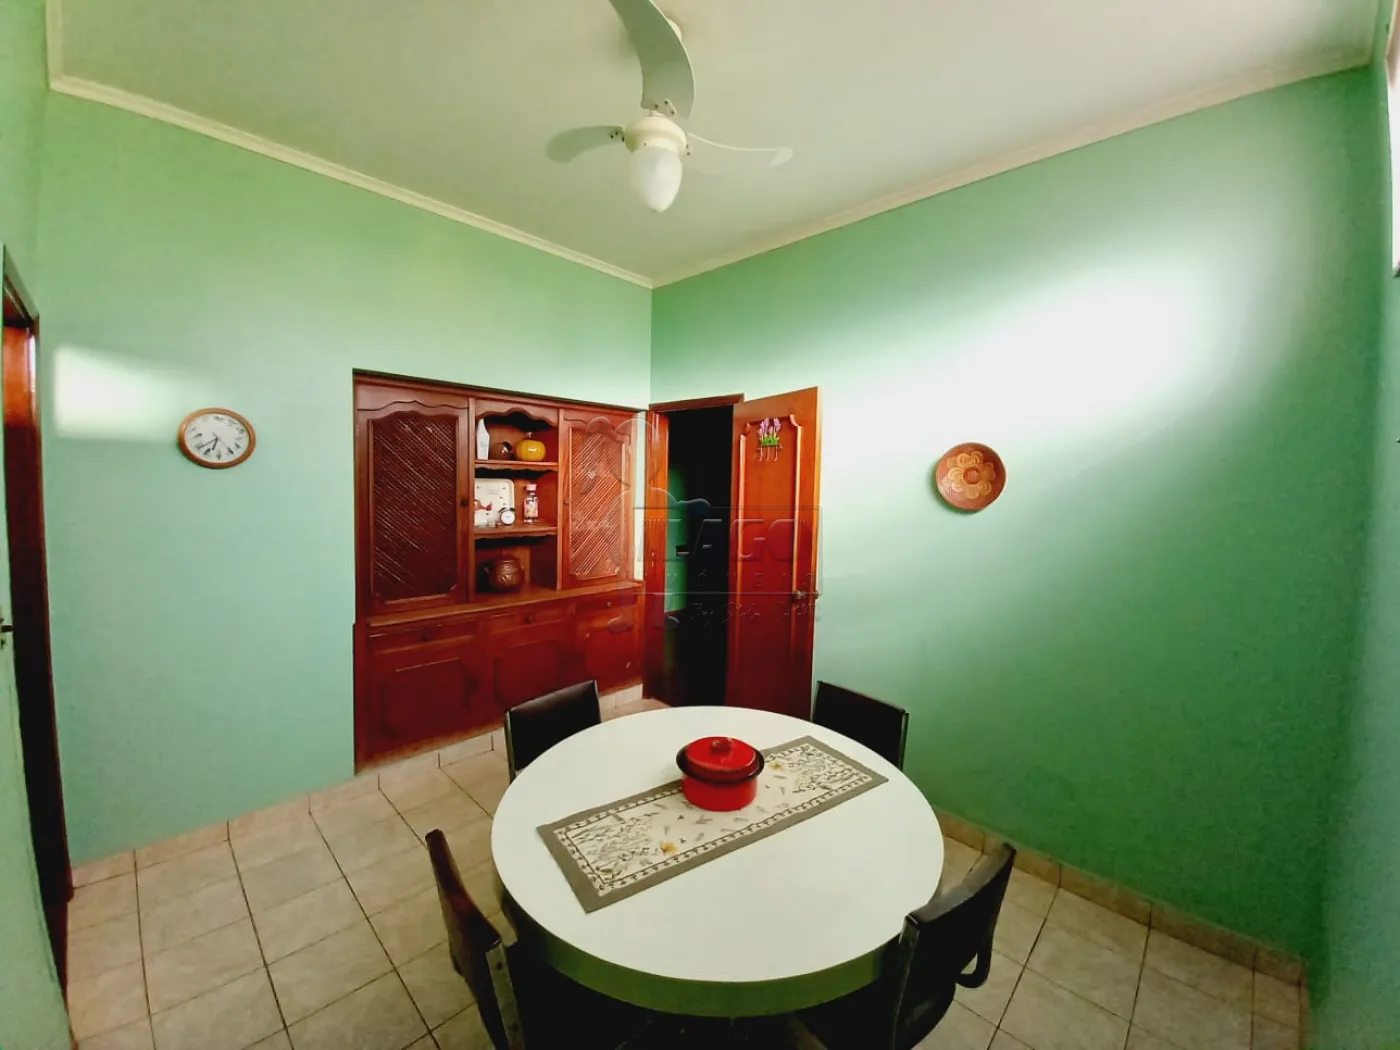 Comprar Casas / Padrão em Ribeirão Preto R$ 689.000,00 - Foto 14